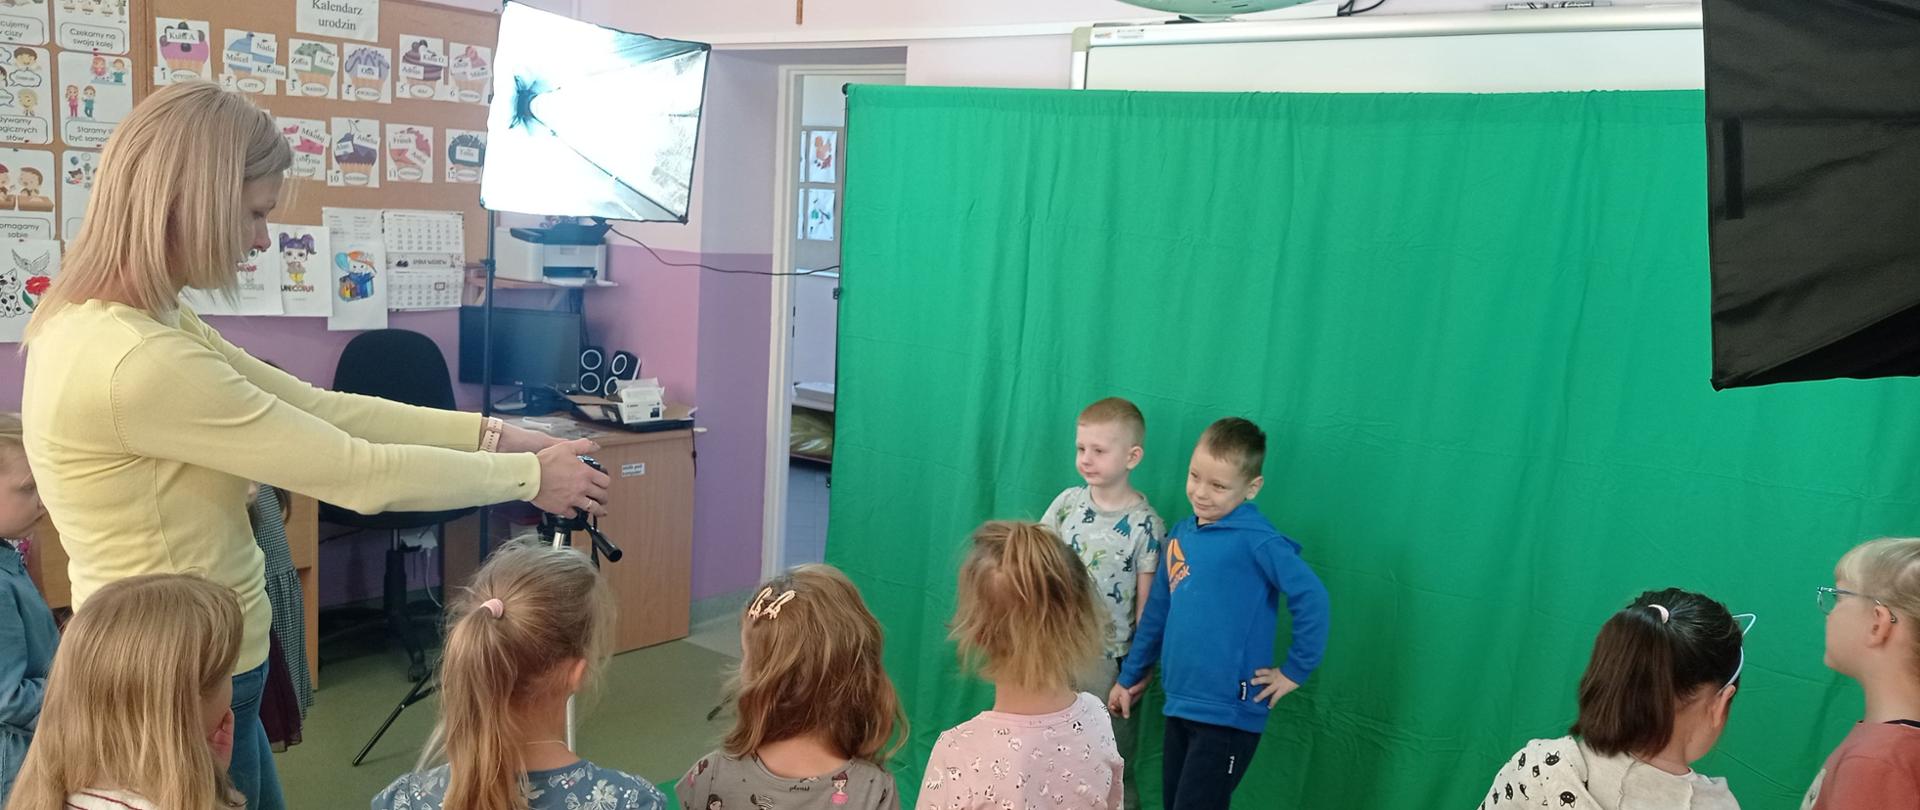 Nauczyciel wyjaśnia uczniom jak robić zdjęcia